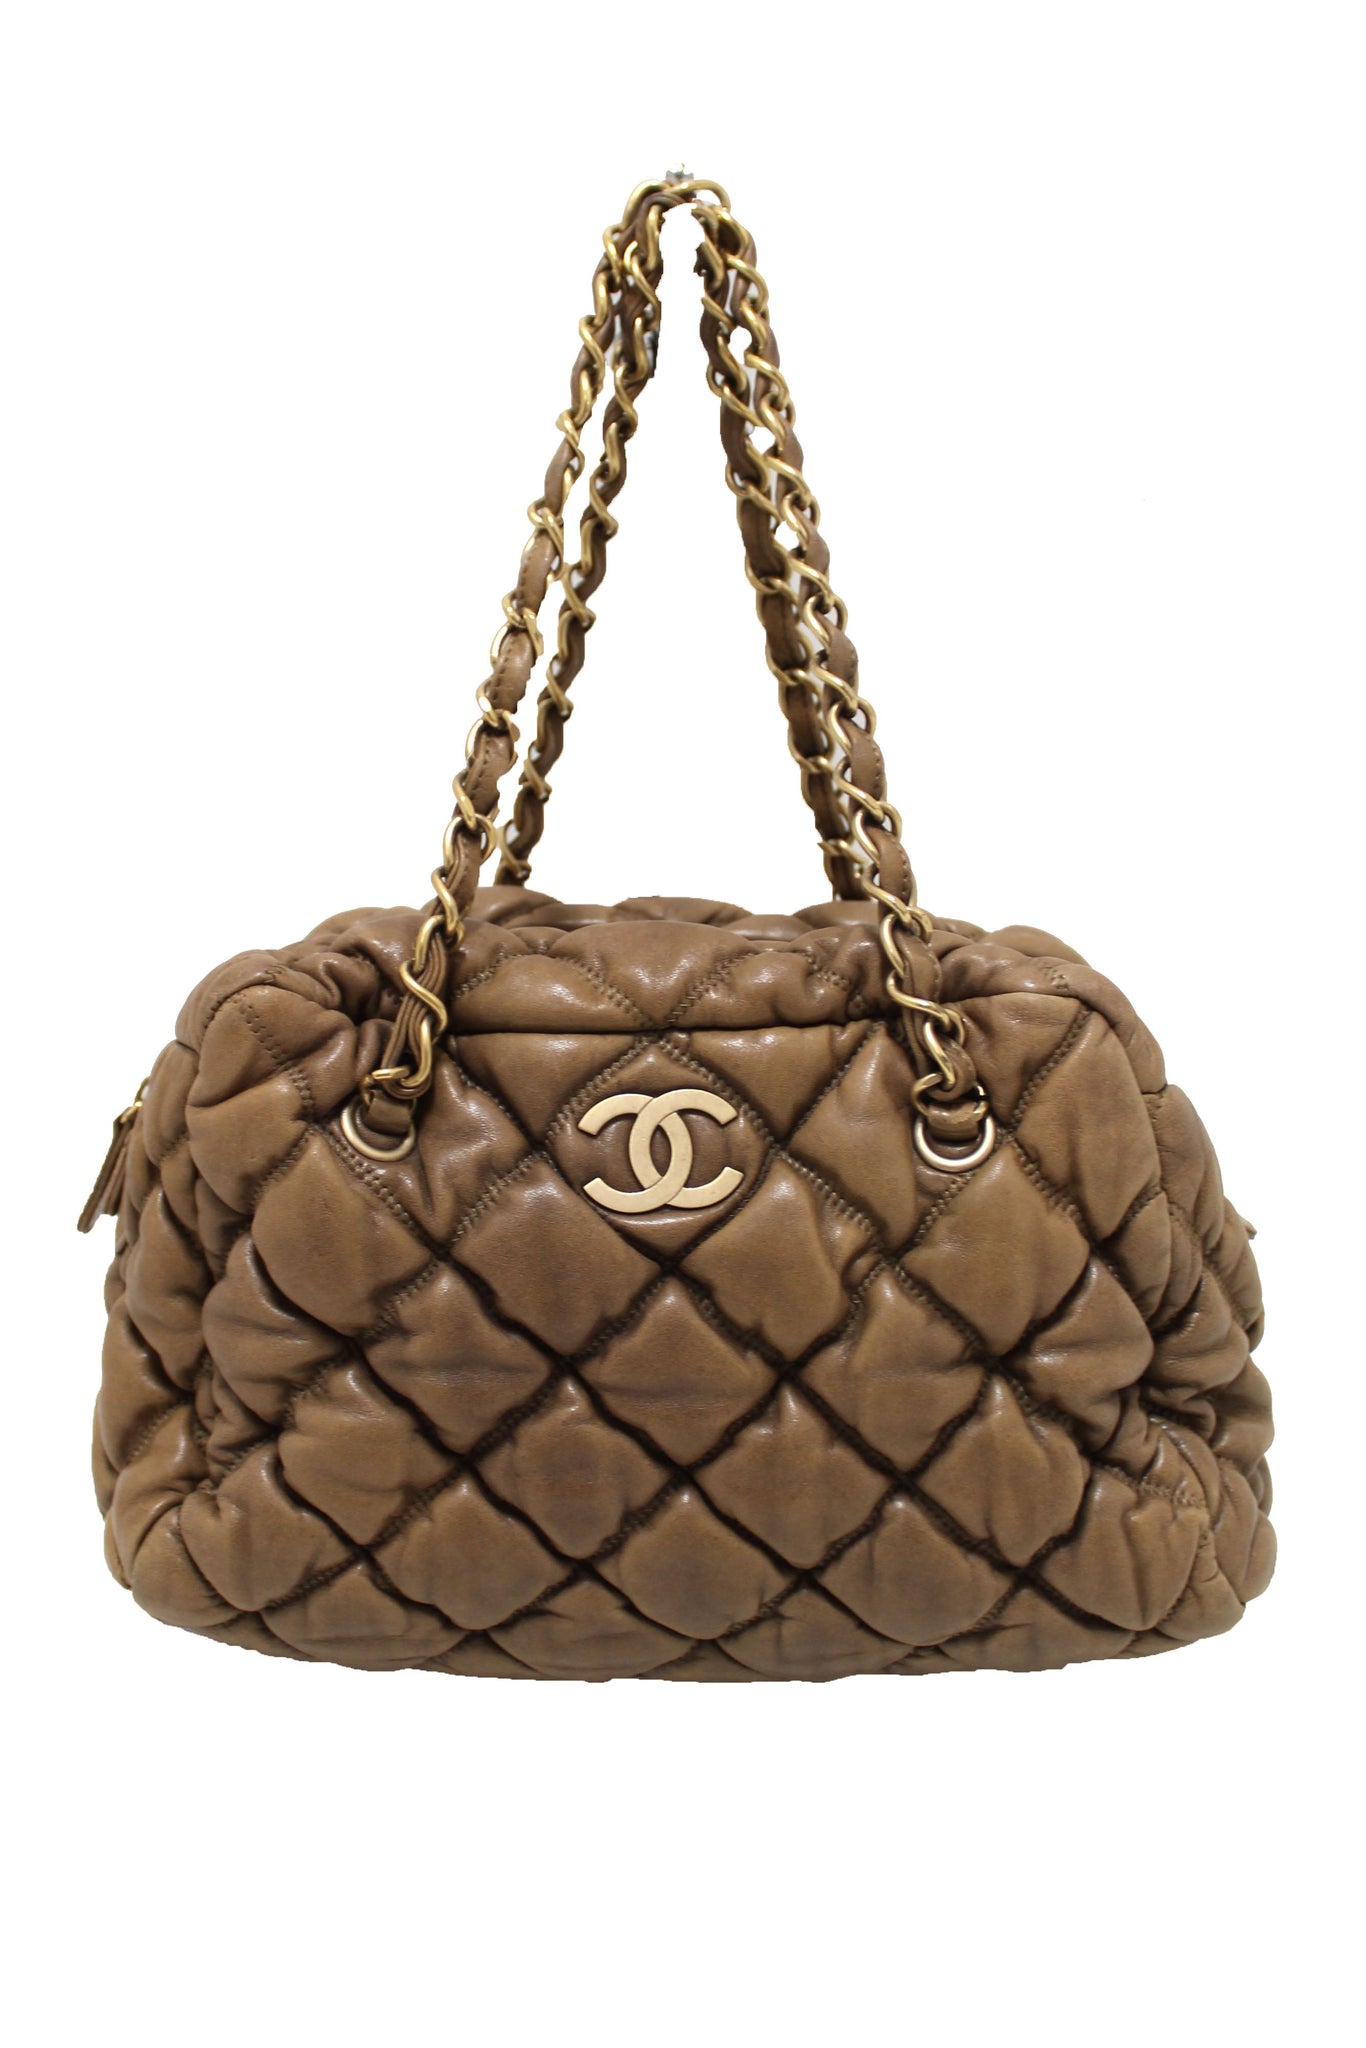 Authentic Chanel Beige Leather Bubble Quilt Chain Bag